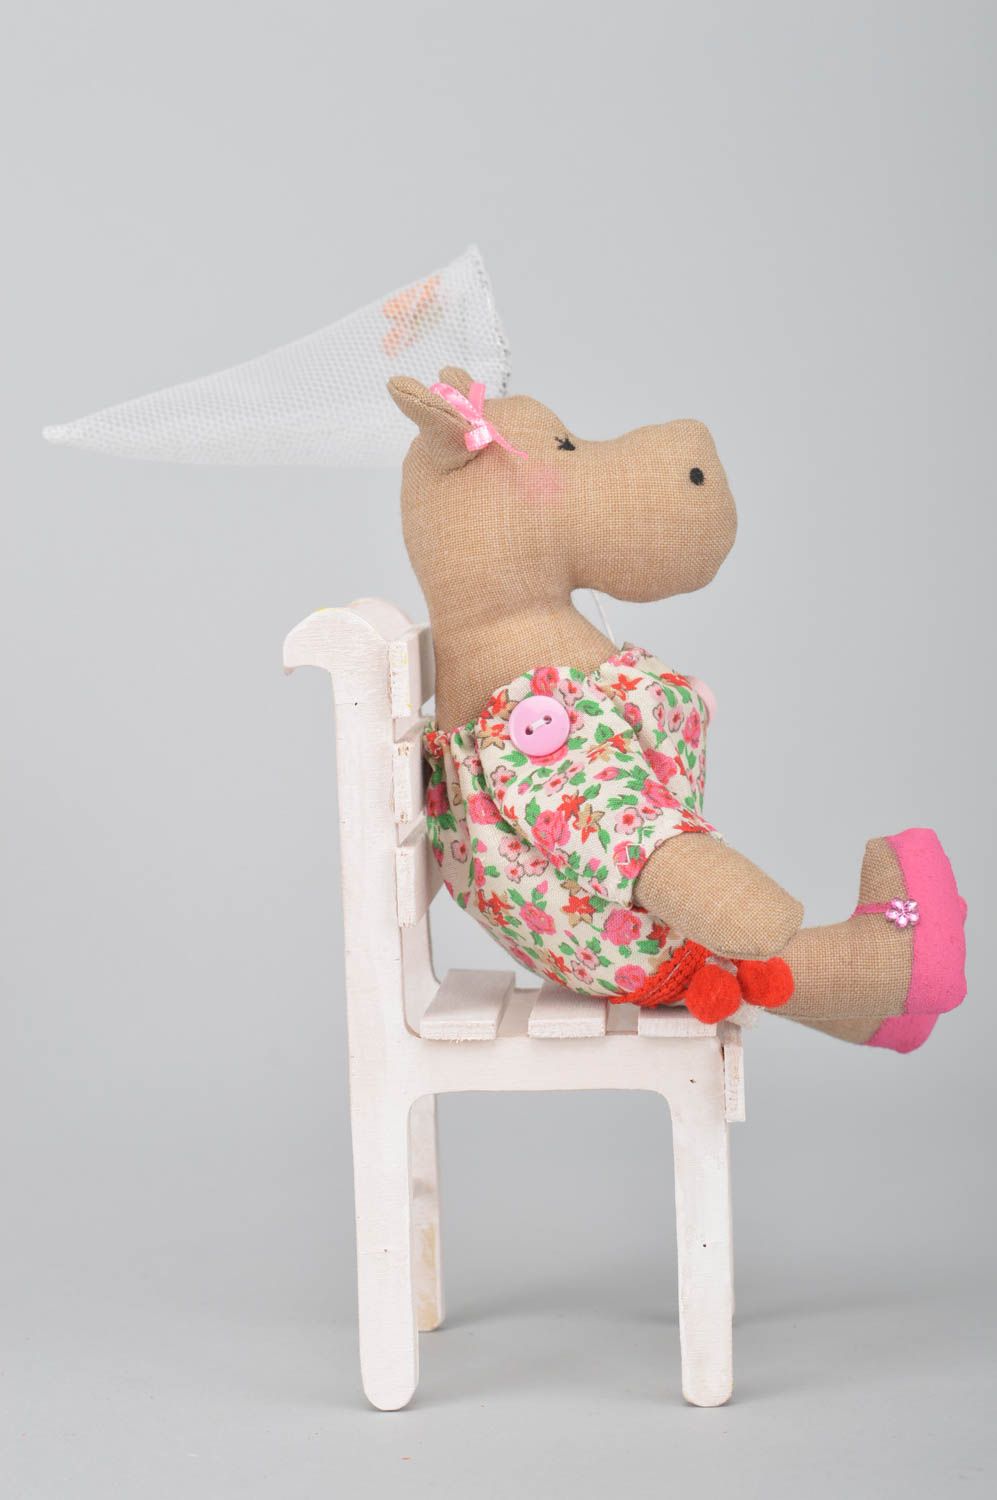 Мягкая игрушка ручной работы для дома из хлопка Бегемотик в платье на стуле фото 2